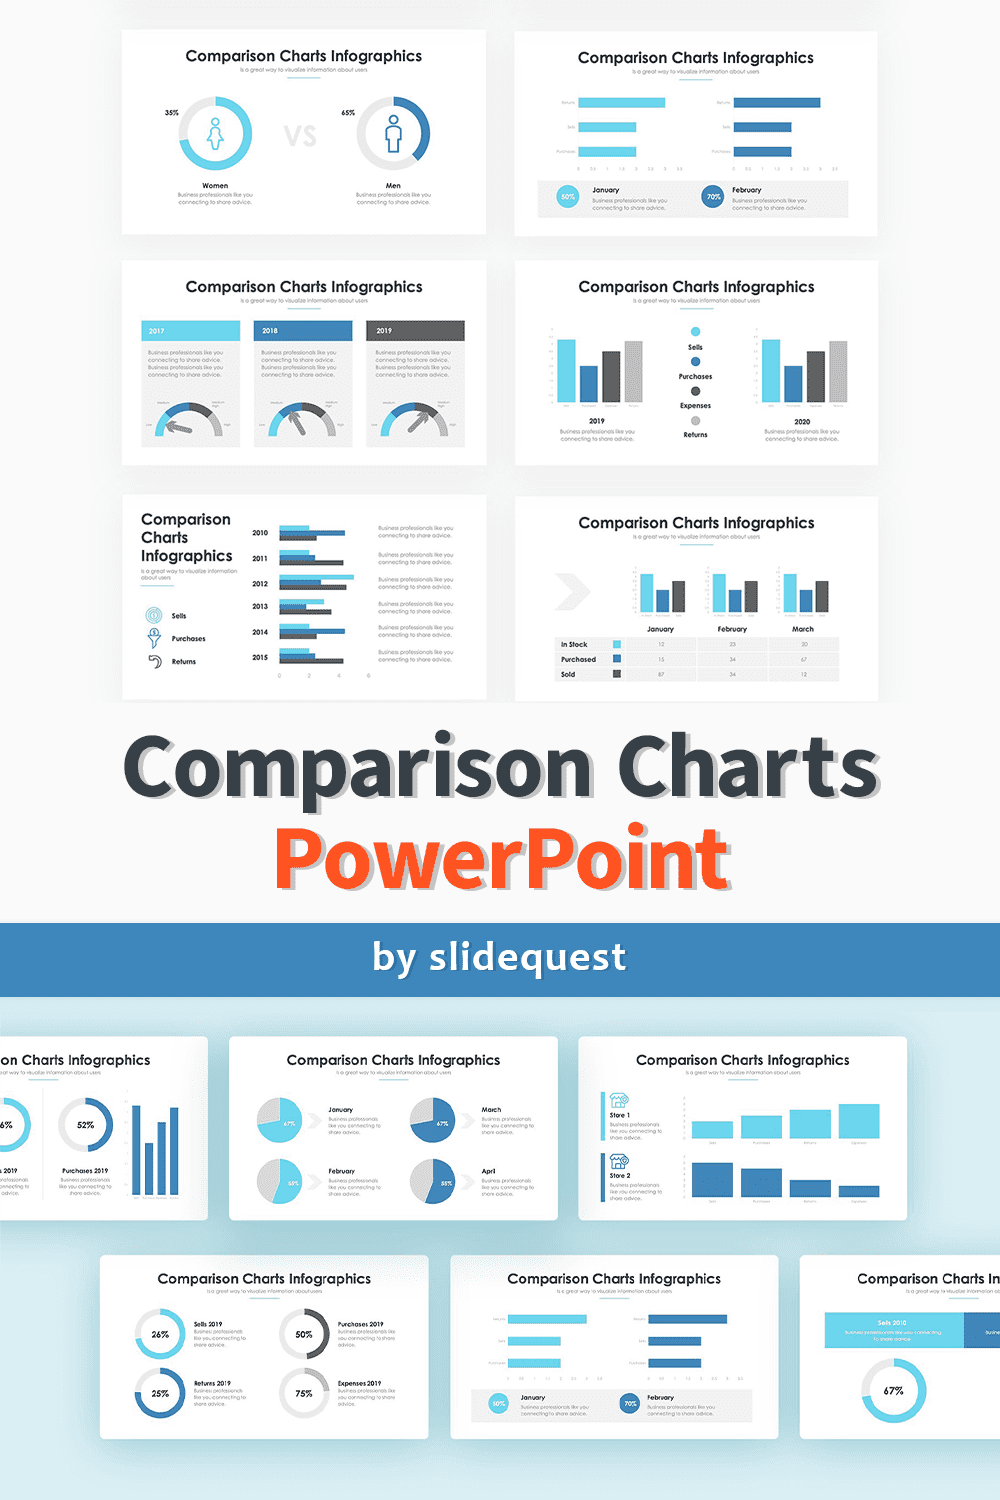 Comparison Charts - PowerPoint 3 pinterest image.